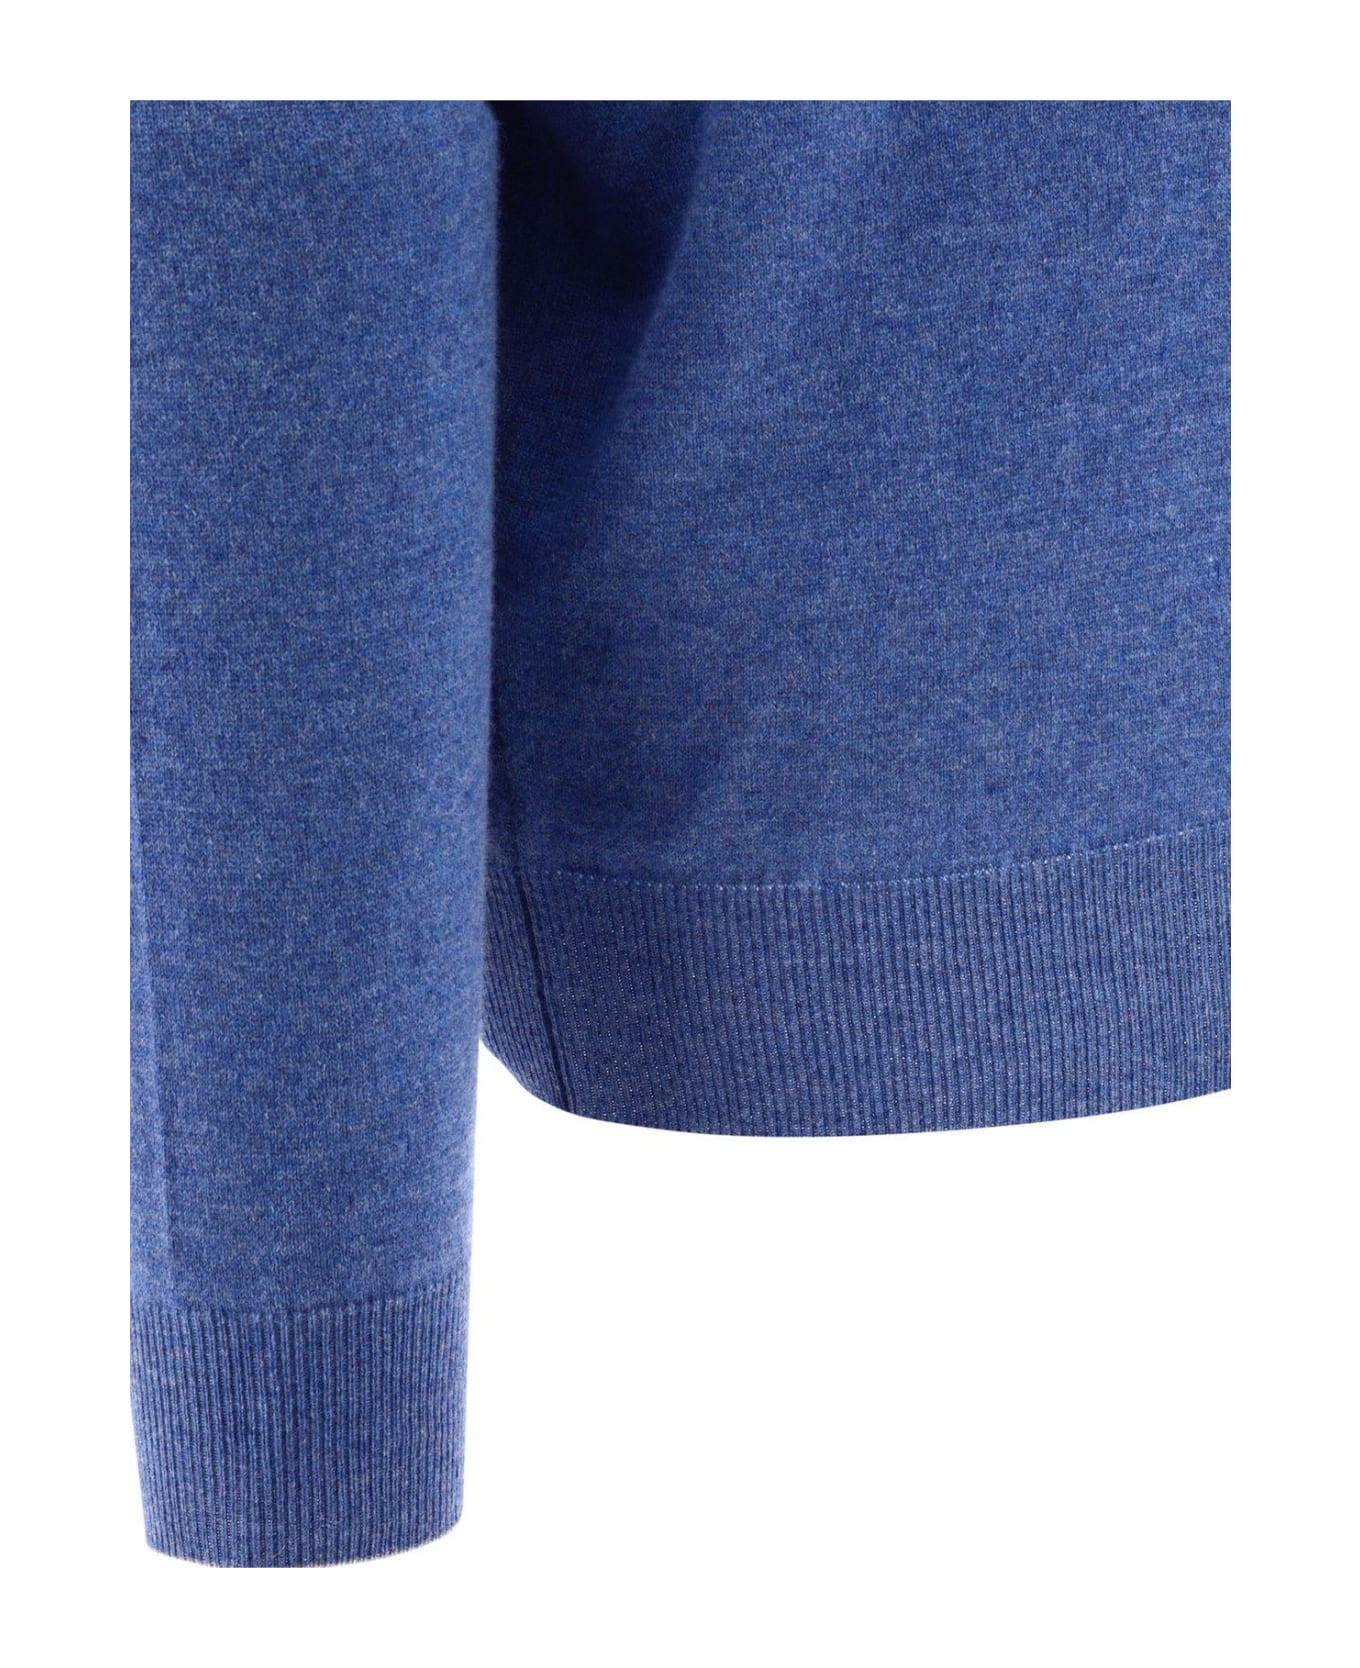 Brunello Cucinelli Cashmere Sweater - Azzurro